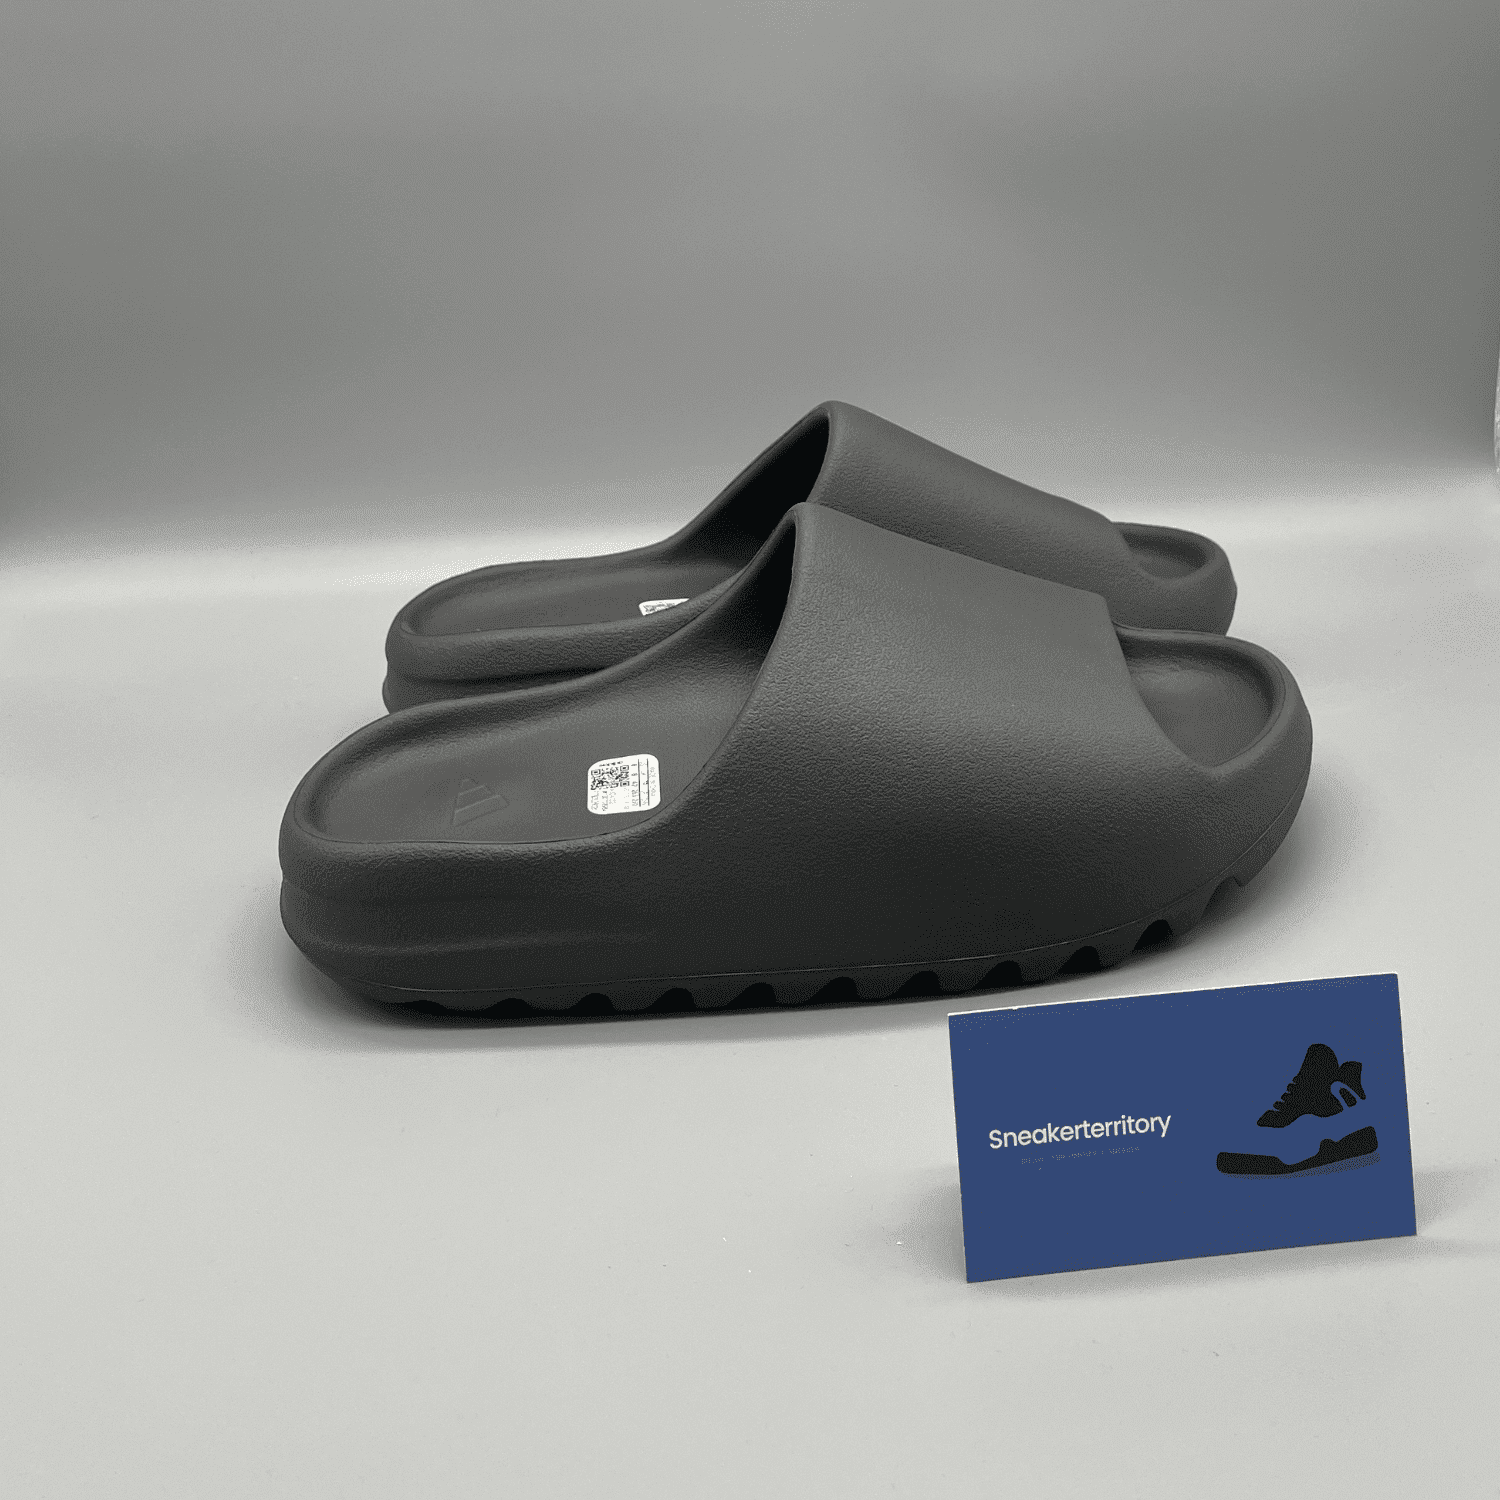 Adidas Yeezy Slide Granite - Sneakerterritory; Sneaker Territory 2